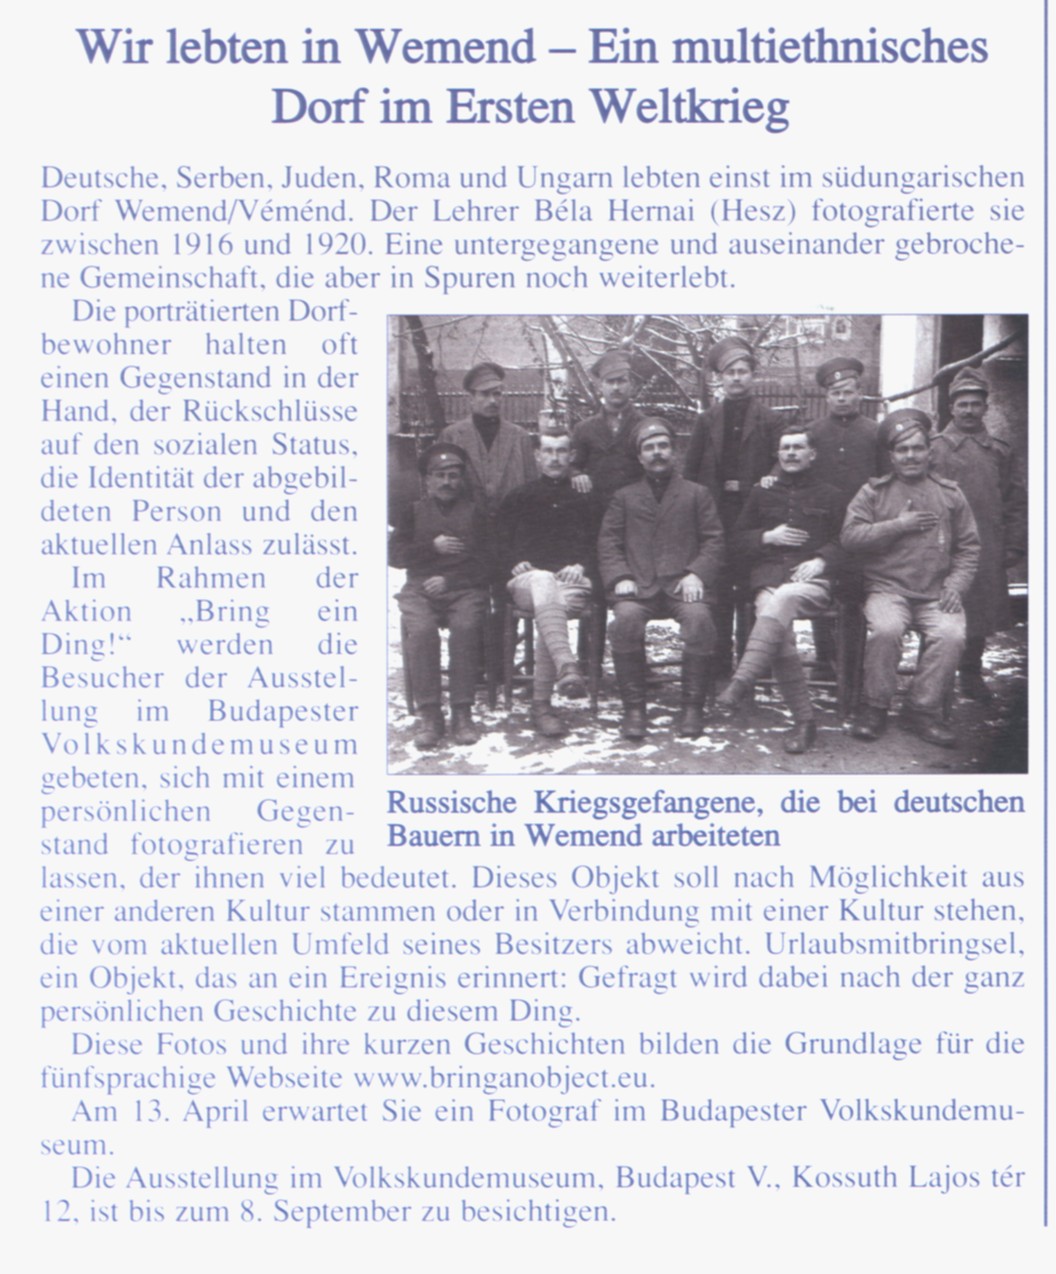 Wir lebten in Wemend - Ein multiethnisches Dorf im ersten Weltkrieg